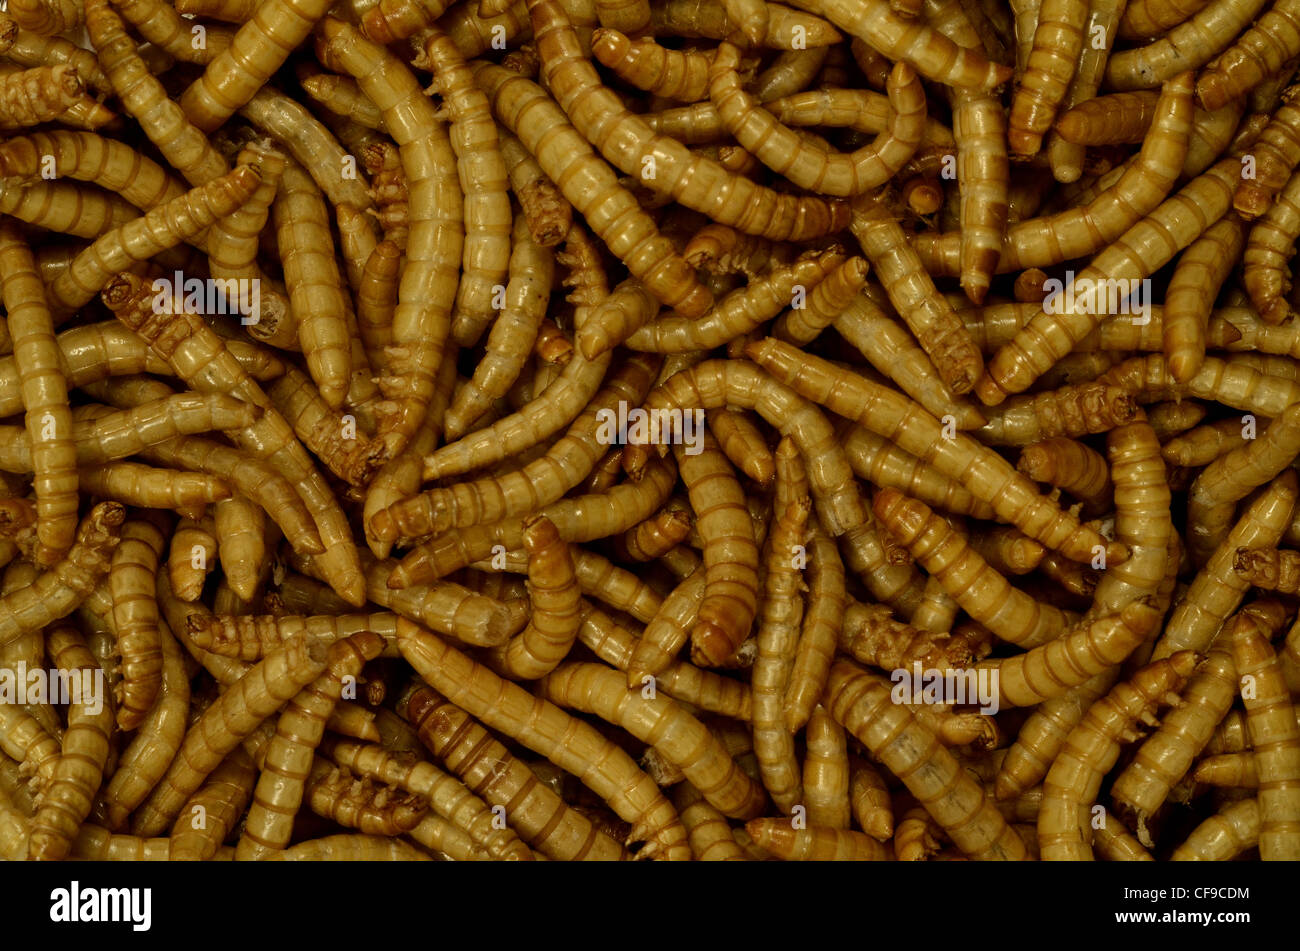 Eine Masse von gefriergetrockneten Mehlwürmern / Tenebrio molitor für den menschlichen Verzehr. Öffnen Sie eine Dose Würmer Metapher. Auch für Vogelfutter. Stockfoto